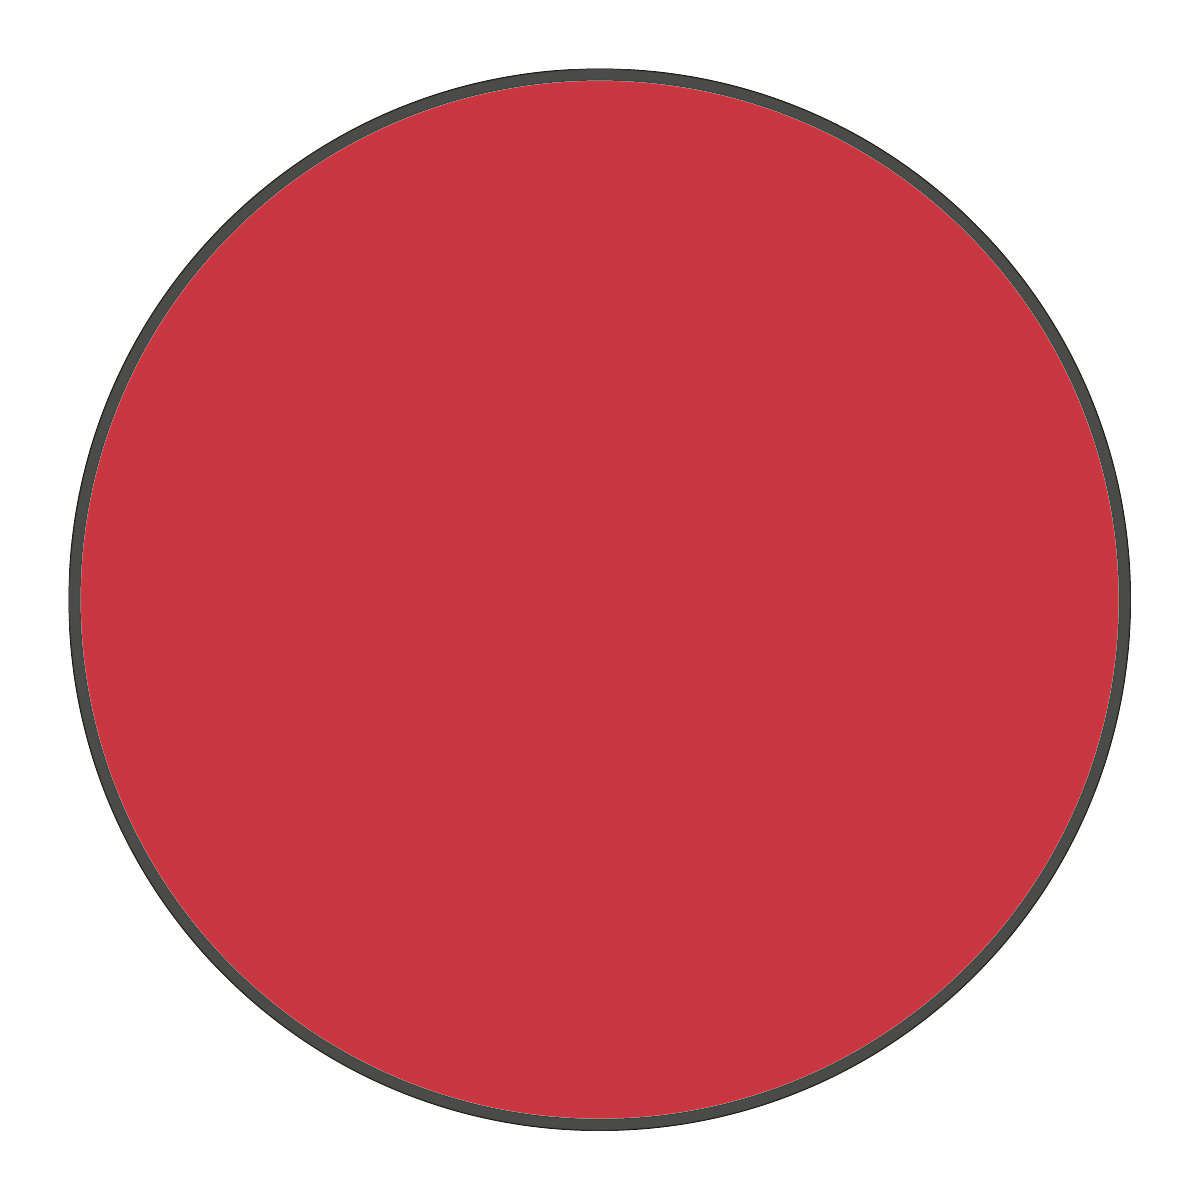 PVC padlójelölések, kör alakú, cs. e. 100 db, piros